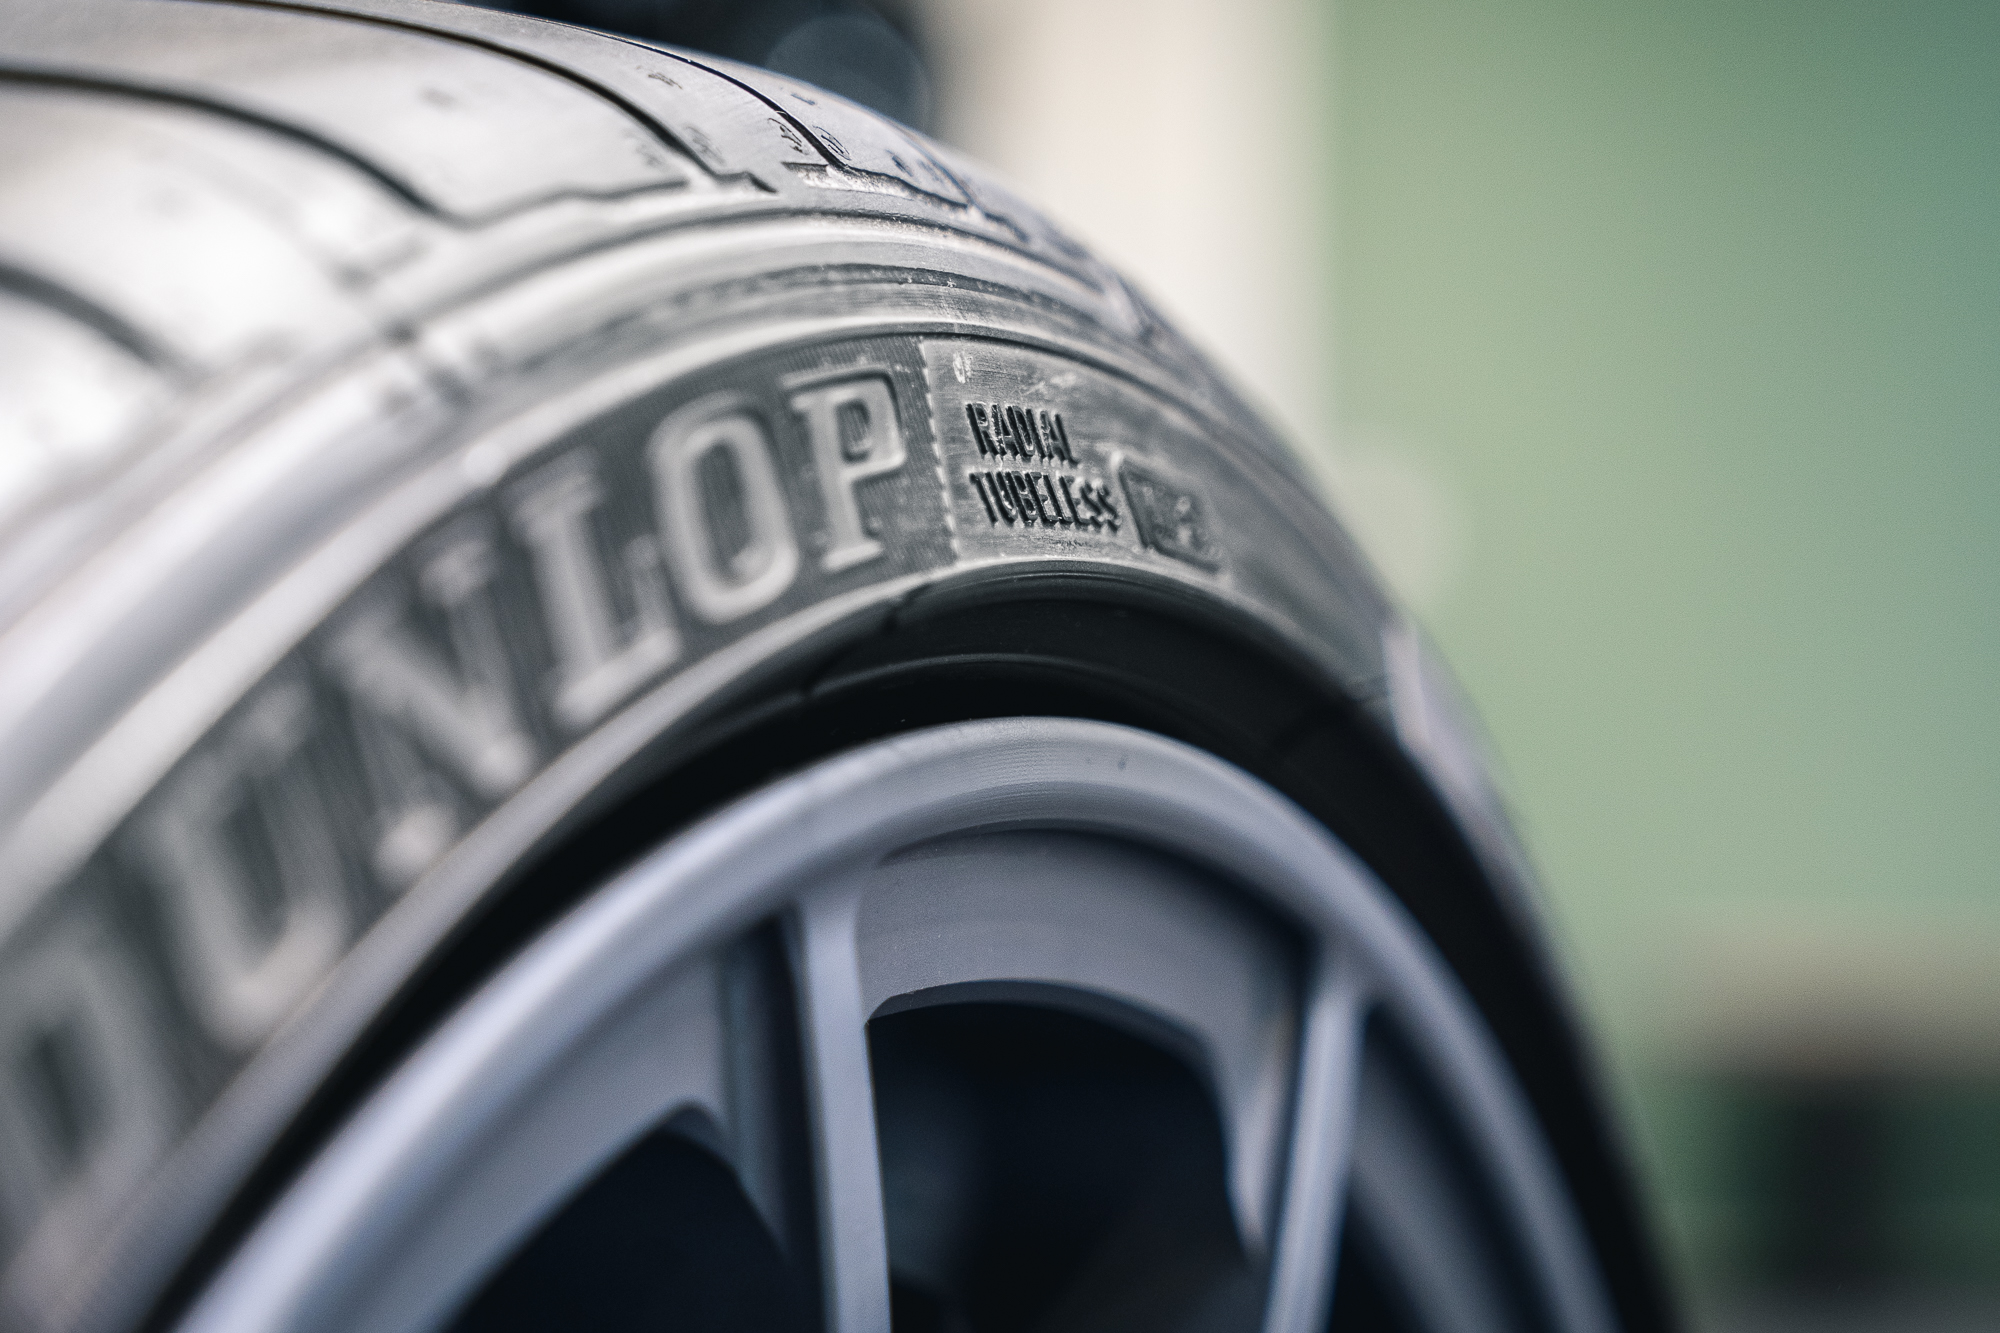 Auto Felgenschutzring Felgenschutz Gummischutz Reifen Felgenschoner  Einfarbig 8m